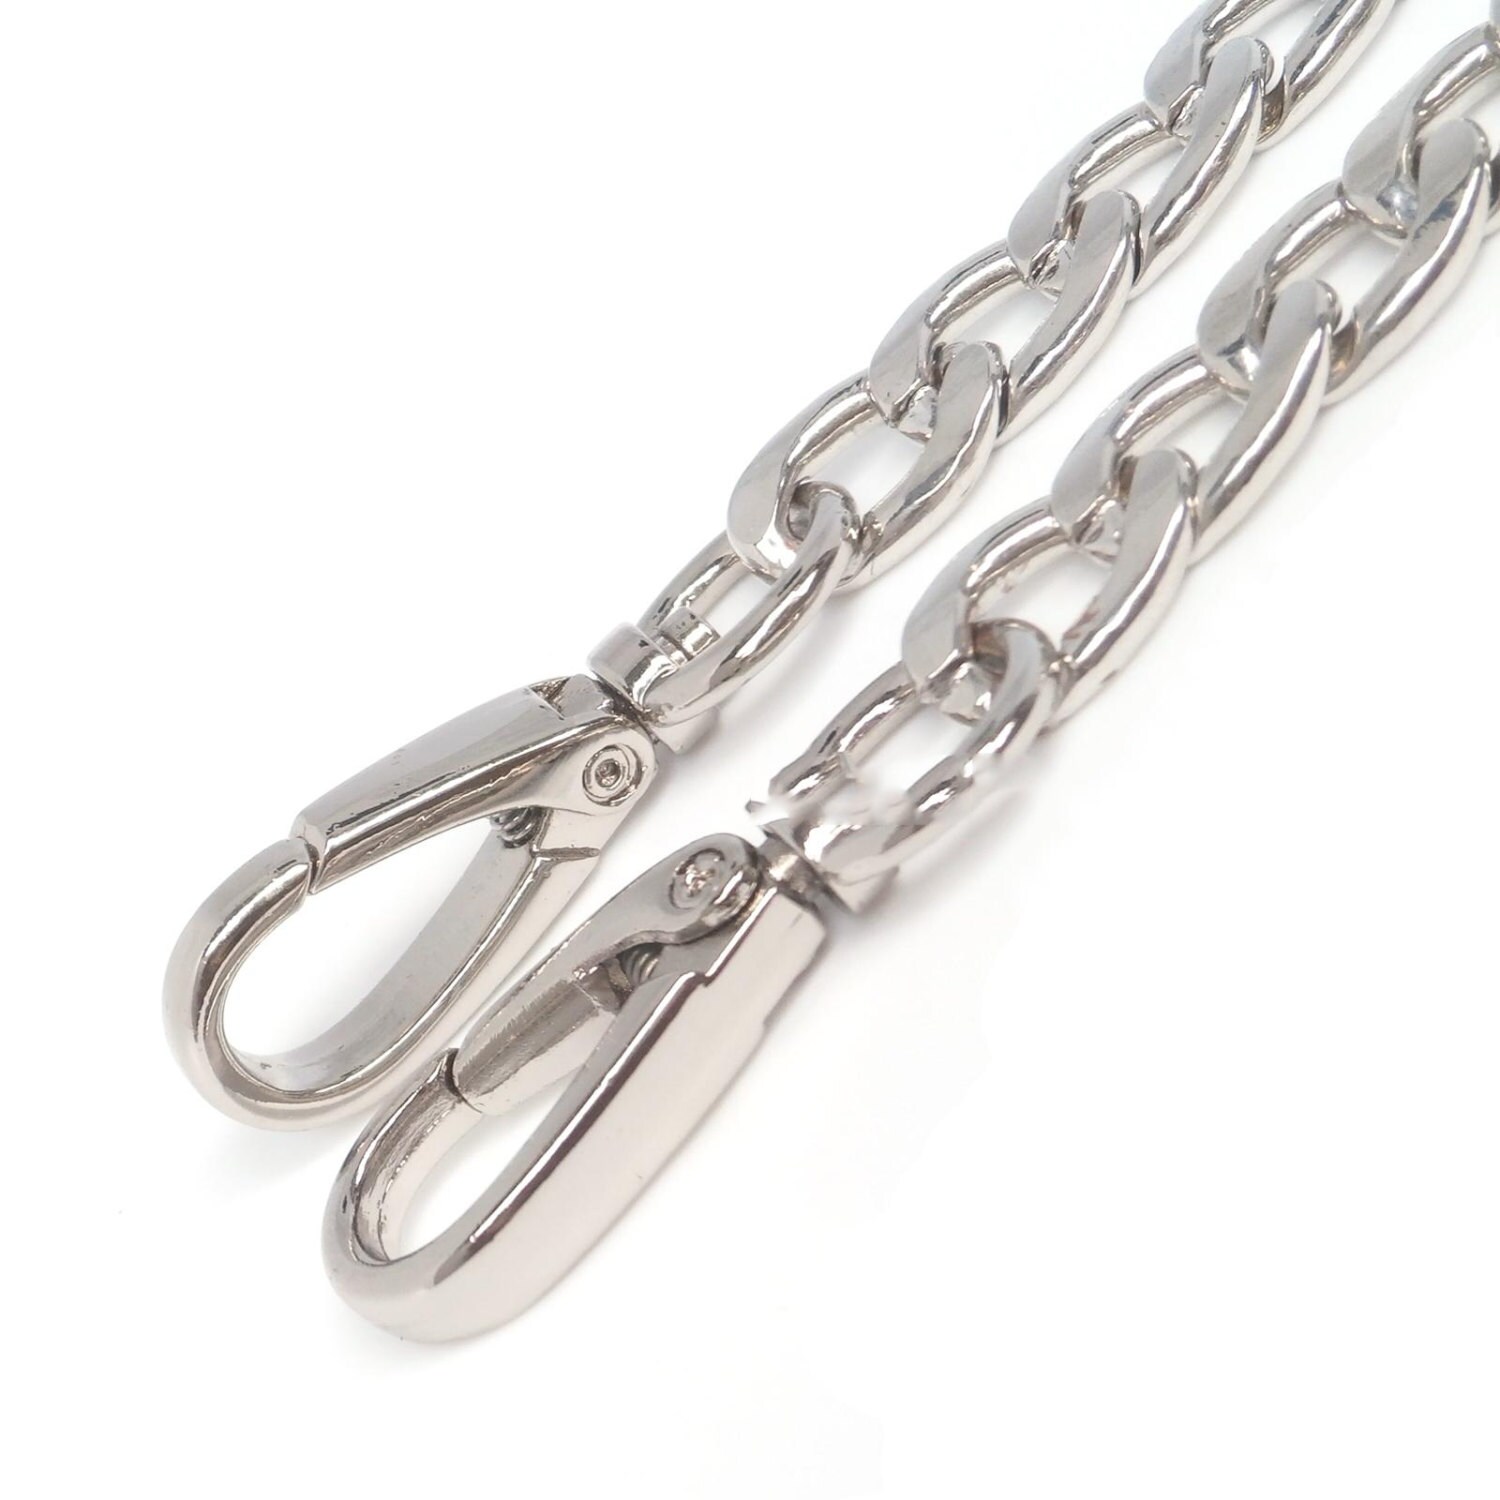 12mm Silver Purse Curb Chain Metal Chain Purse Chain Strap